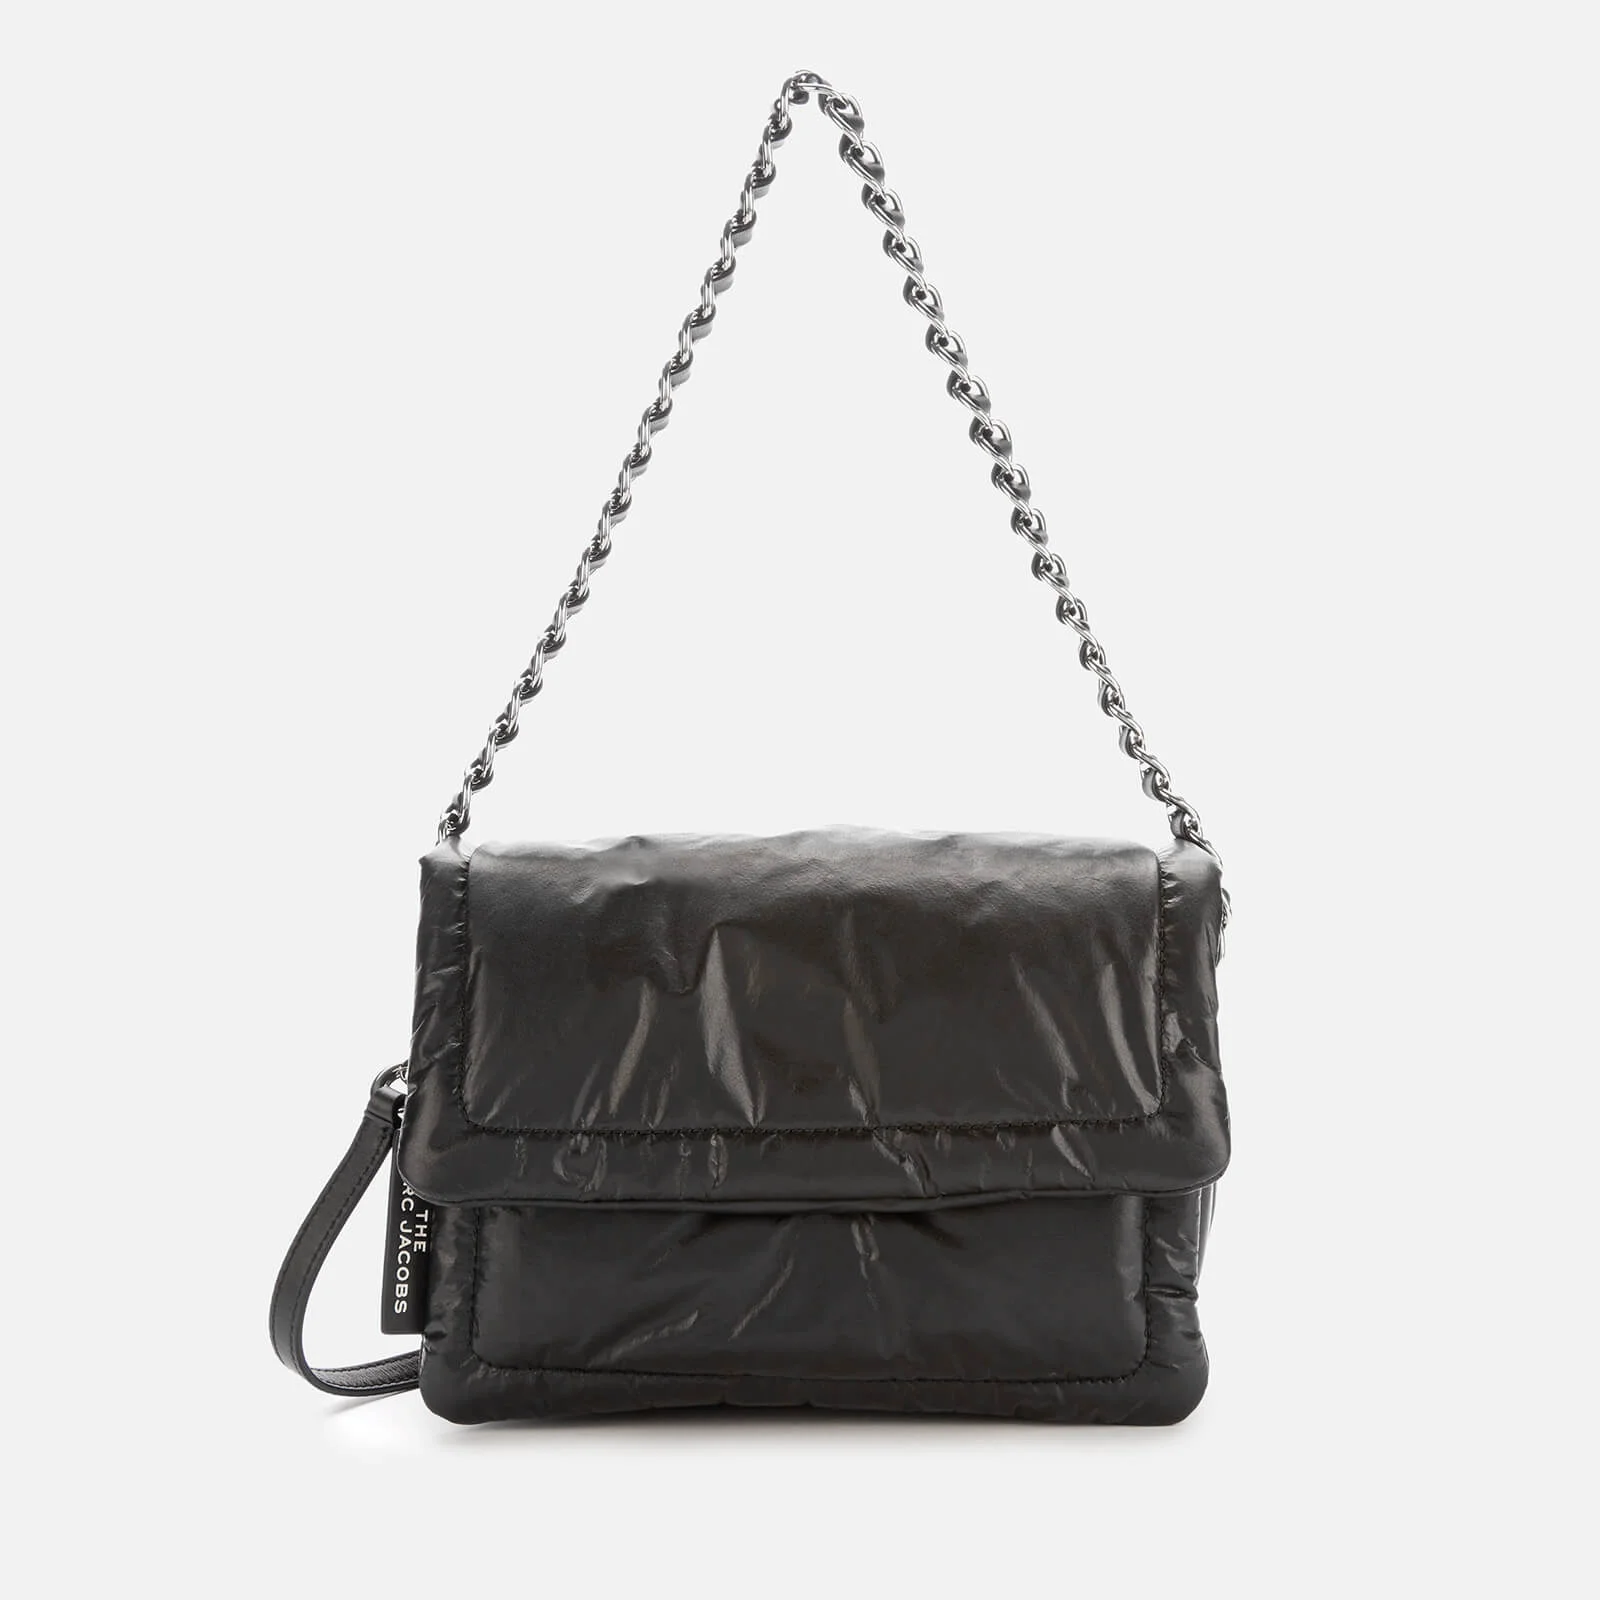 Marc Jacobs Women's The Pillow Bag - Black Image 1